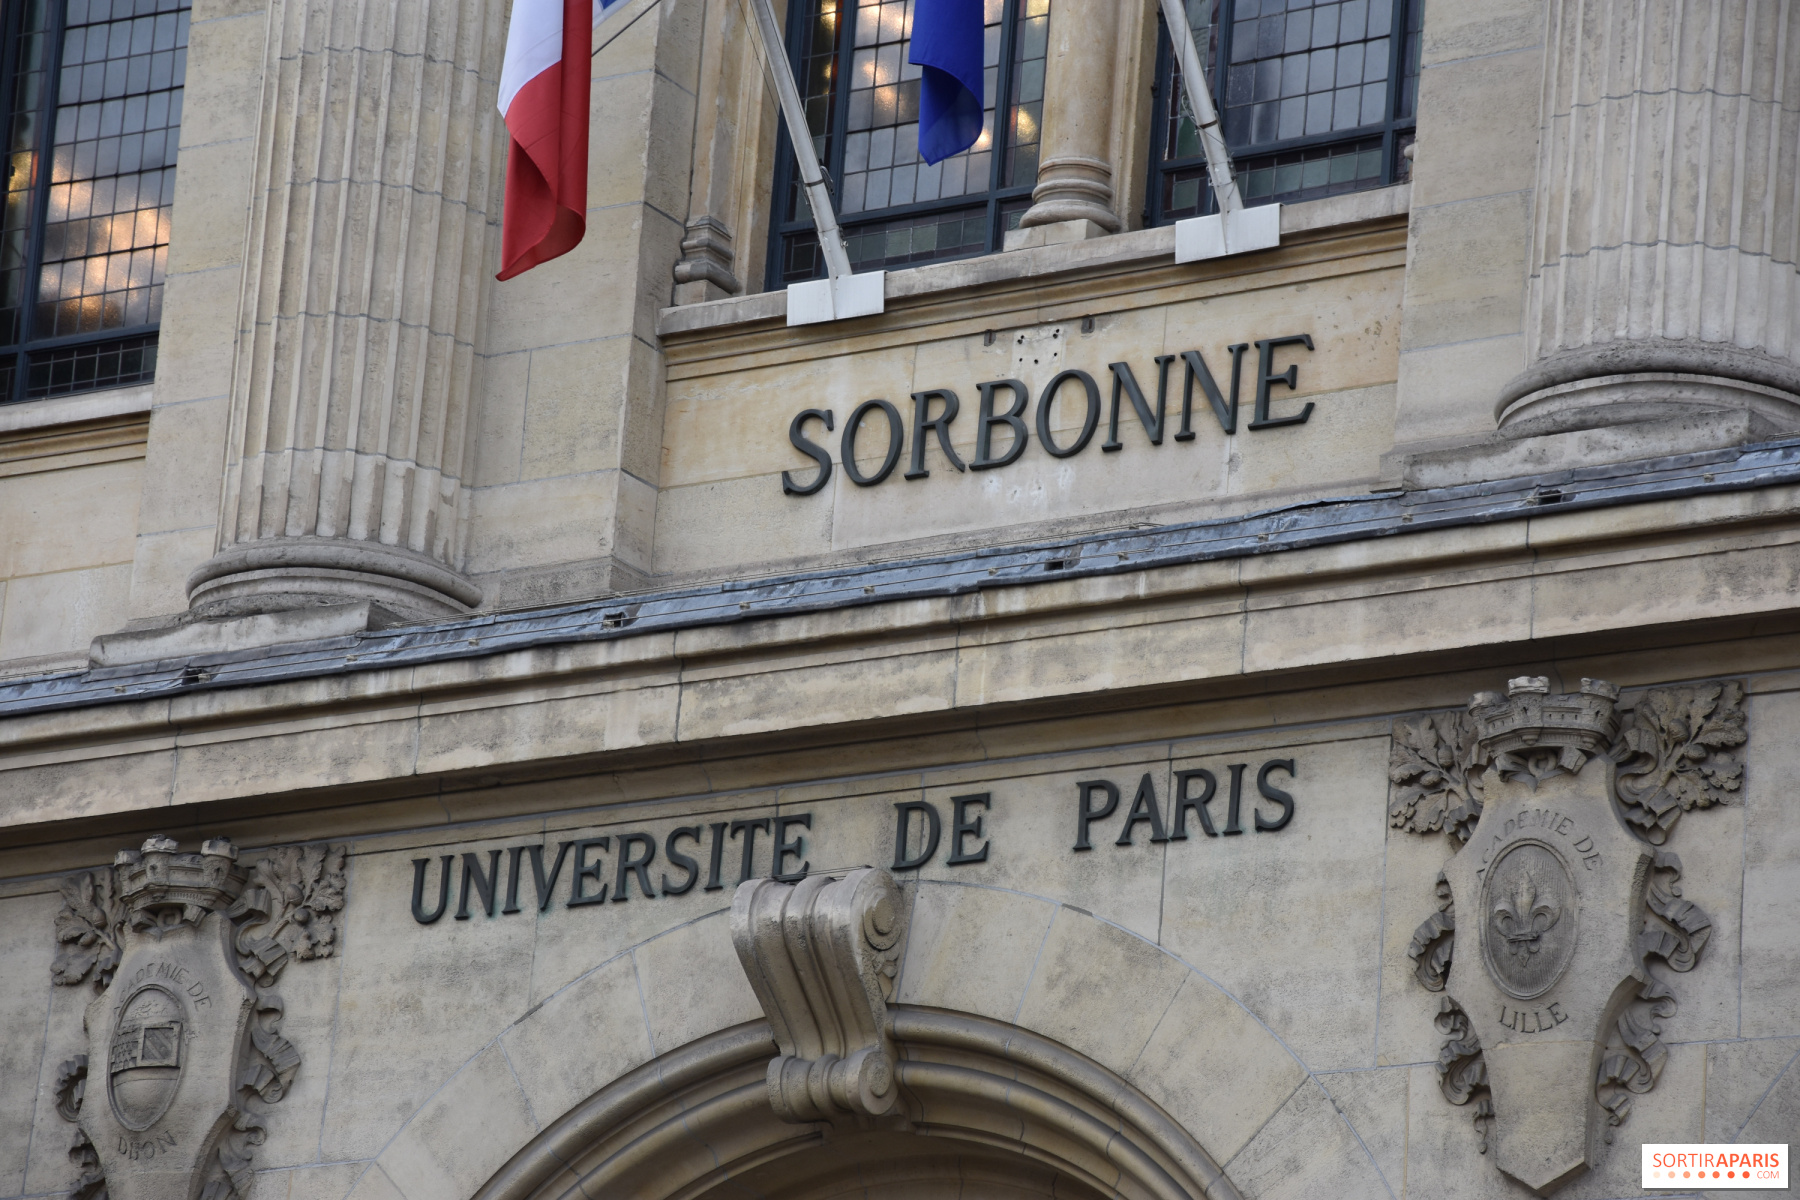 Journées du Patrimoine 2021 à Paris : La Sorbonne - Sortiraparis.com - Patrimoine Journée